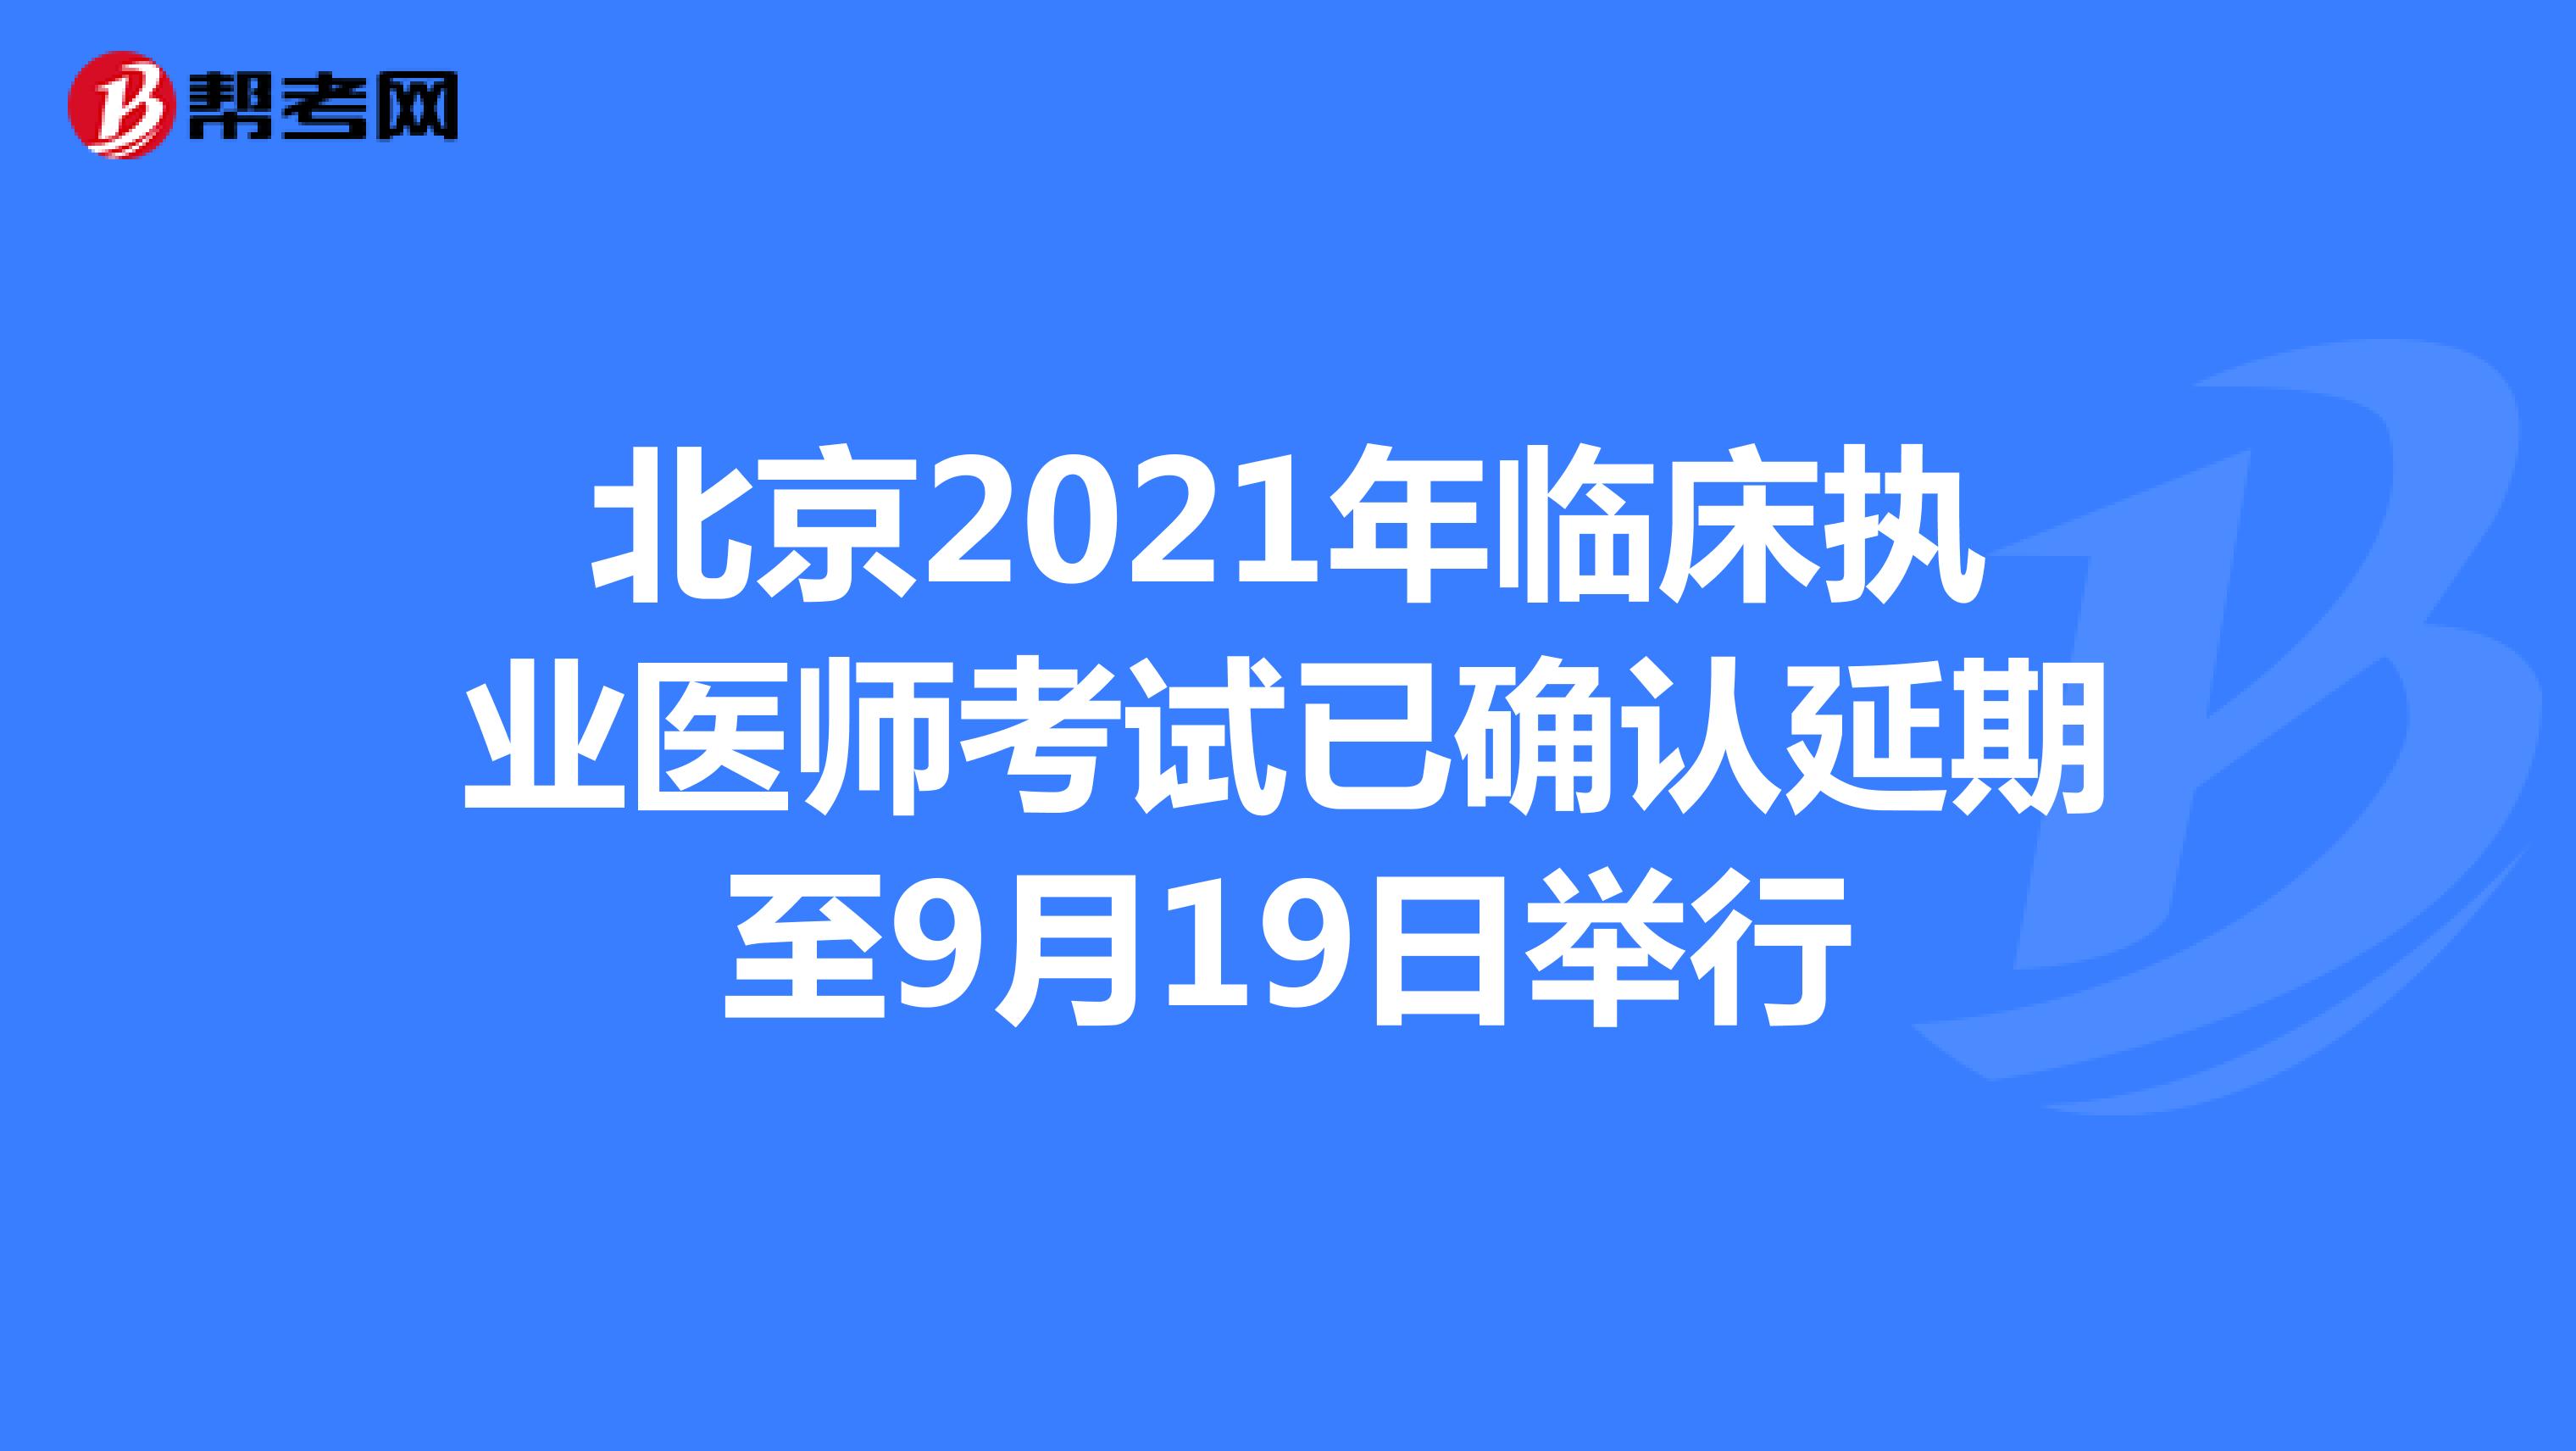 北京2021年临床执业医师考试已确认延期至9月19日举行